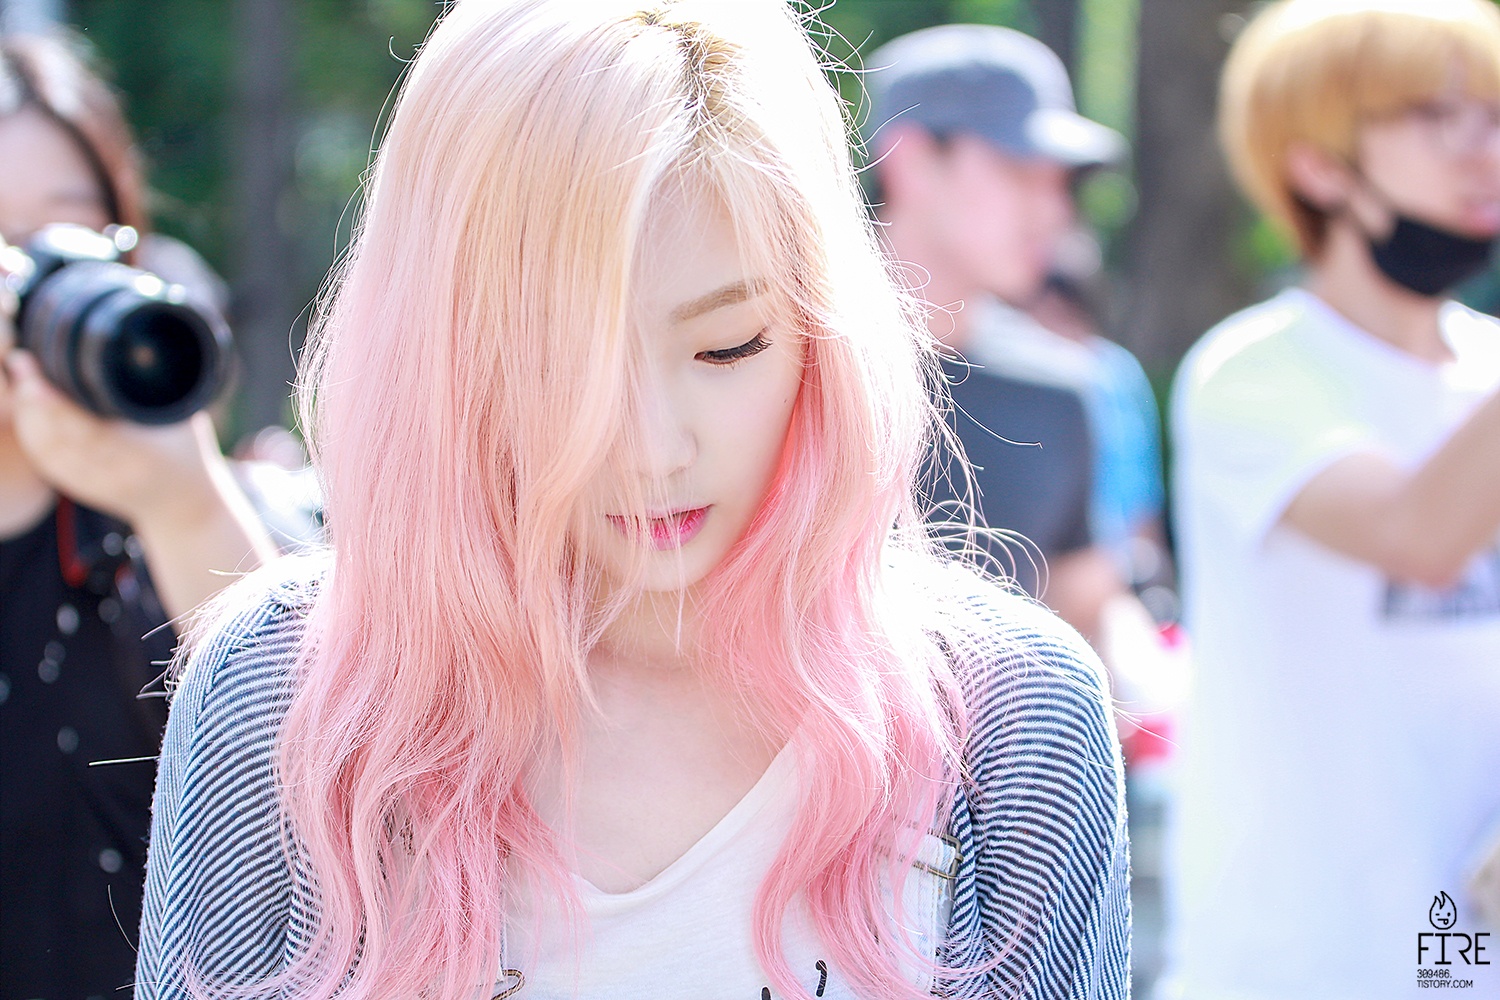 Pink hair schoolgirl